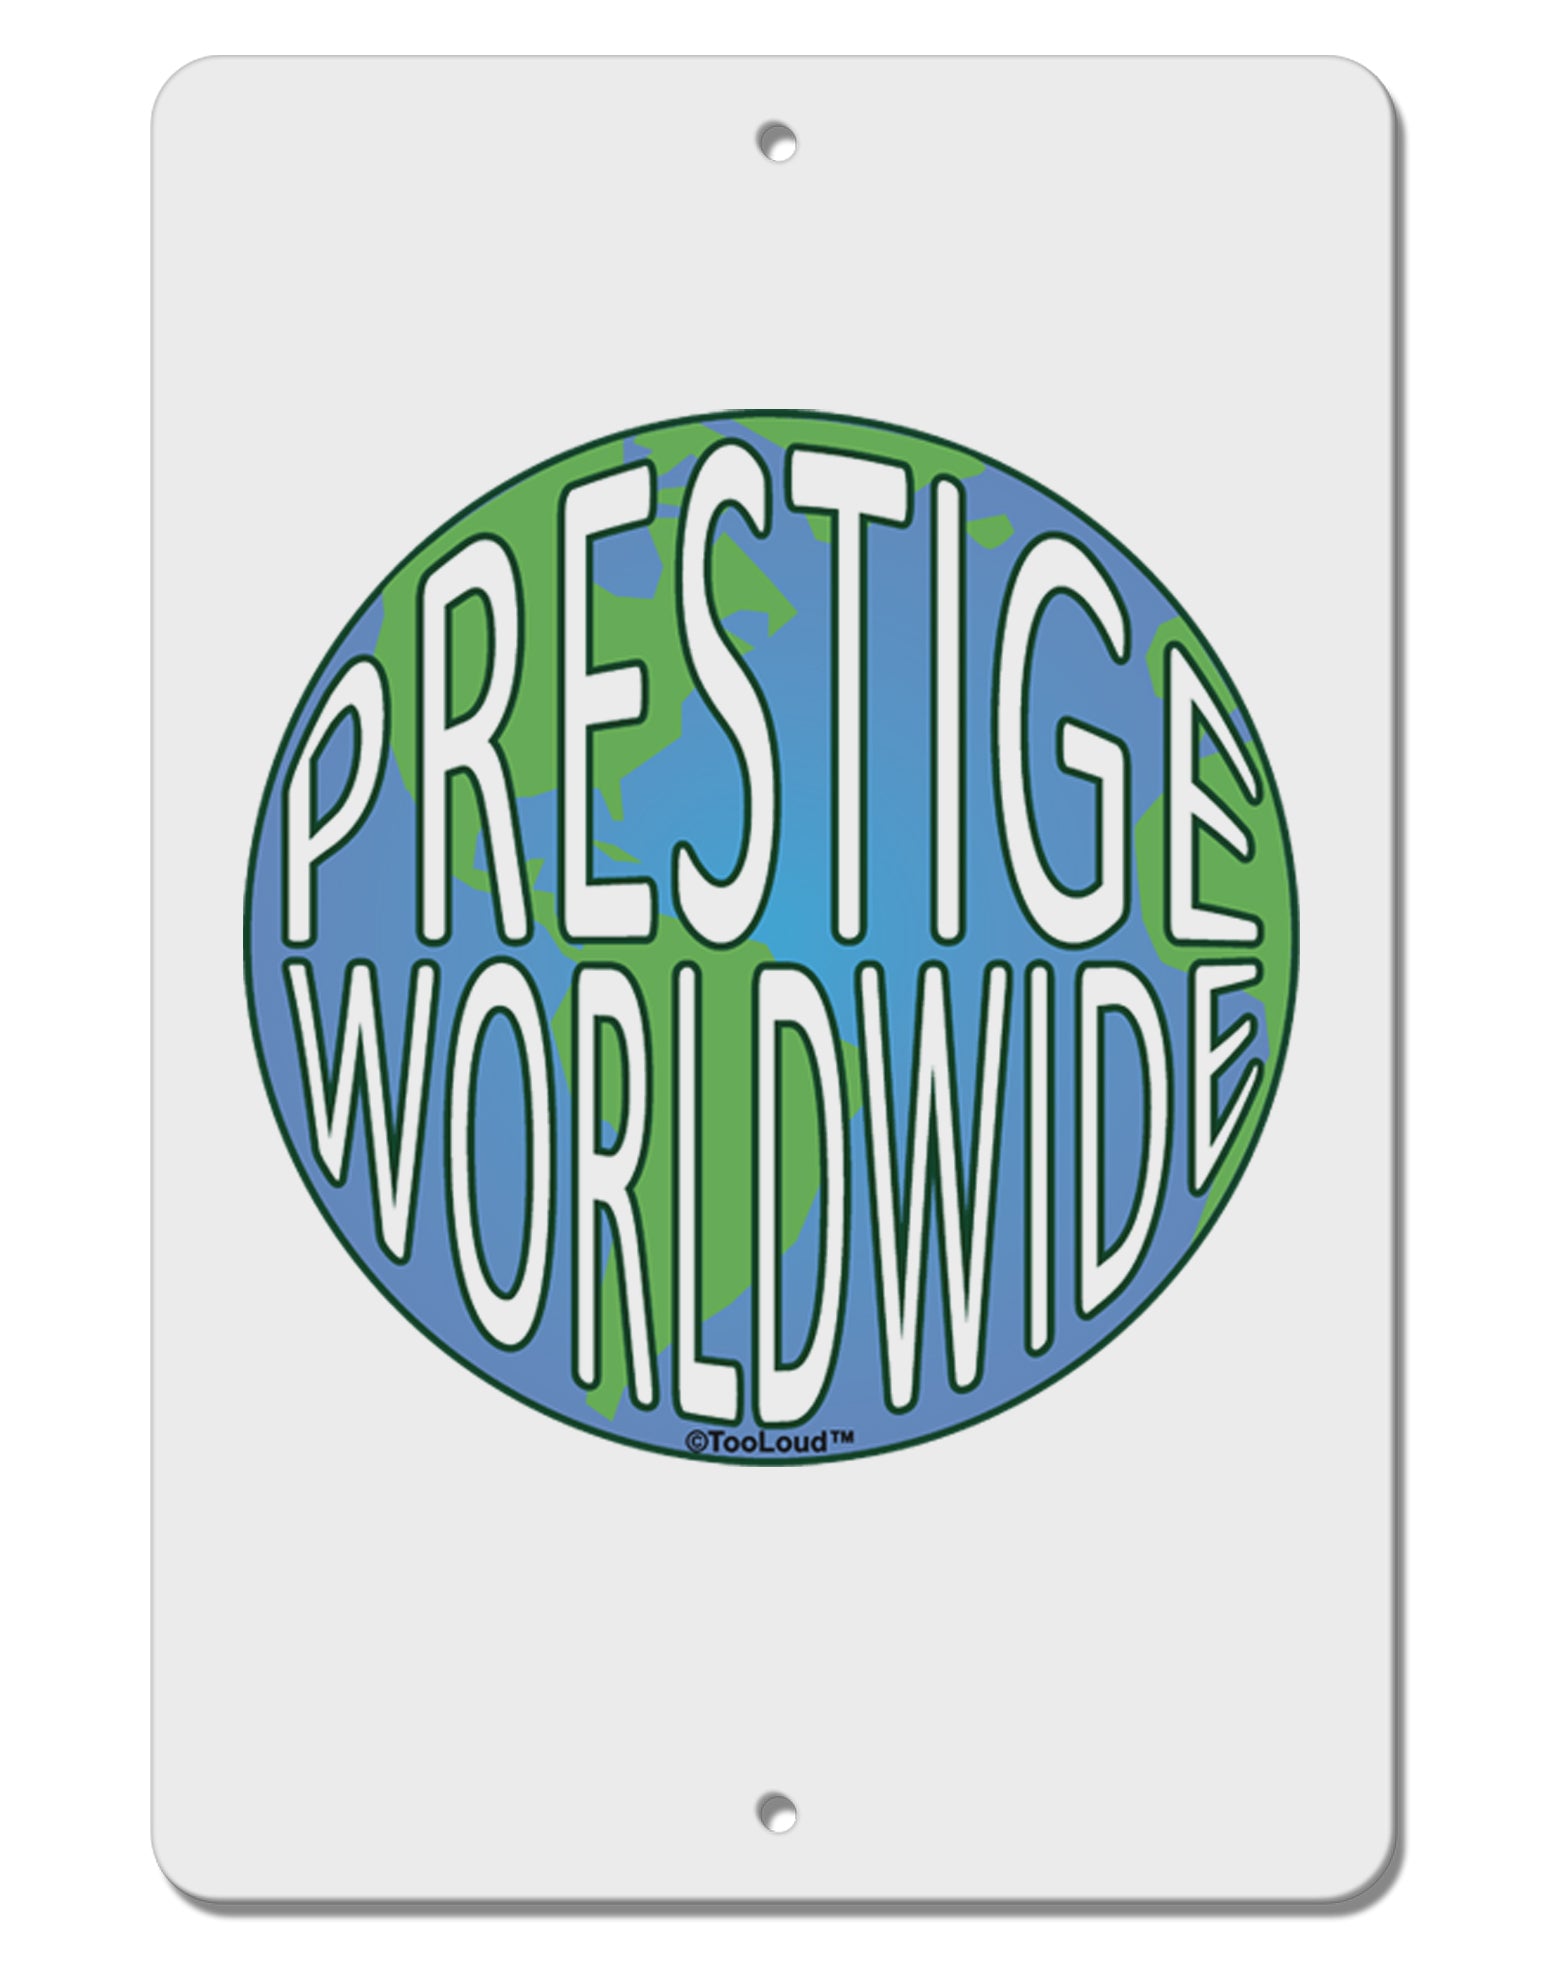 prestige worldwide wallpaper